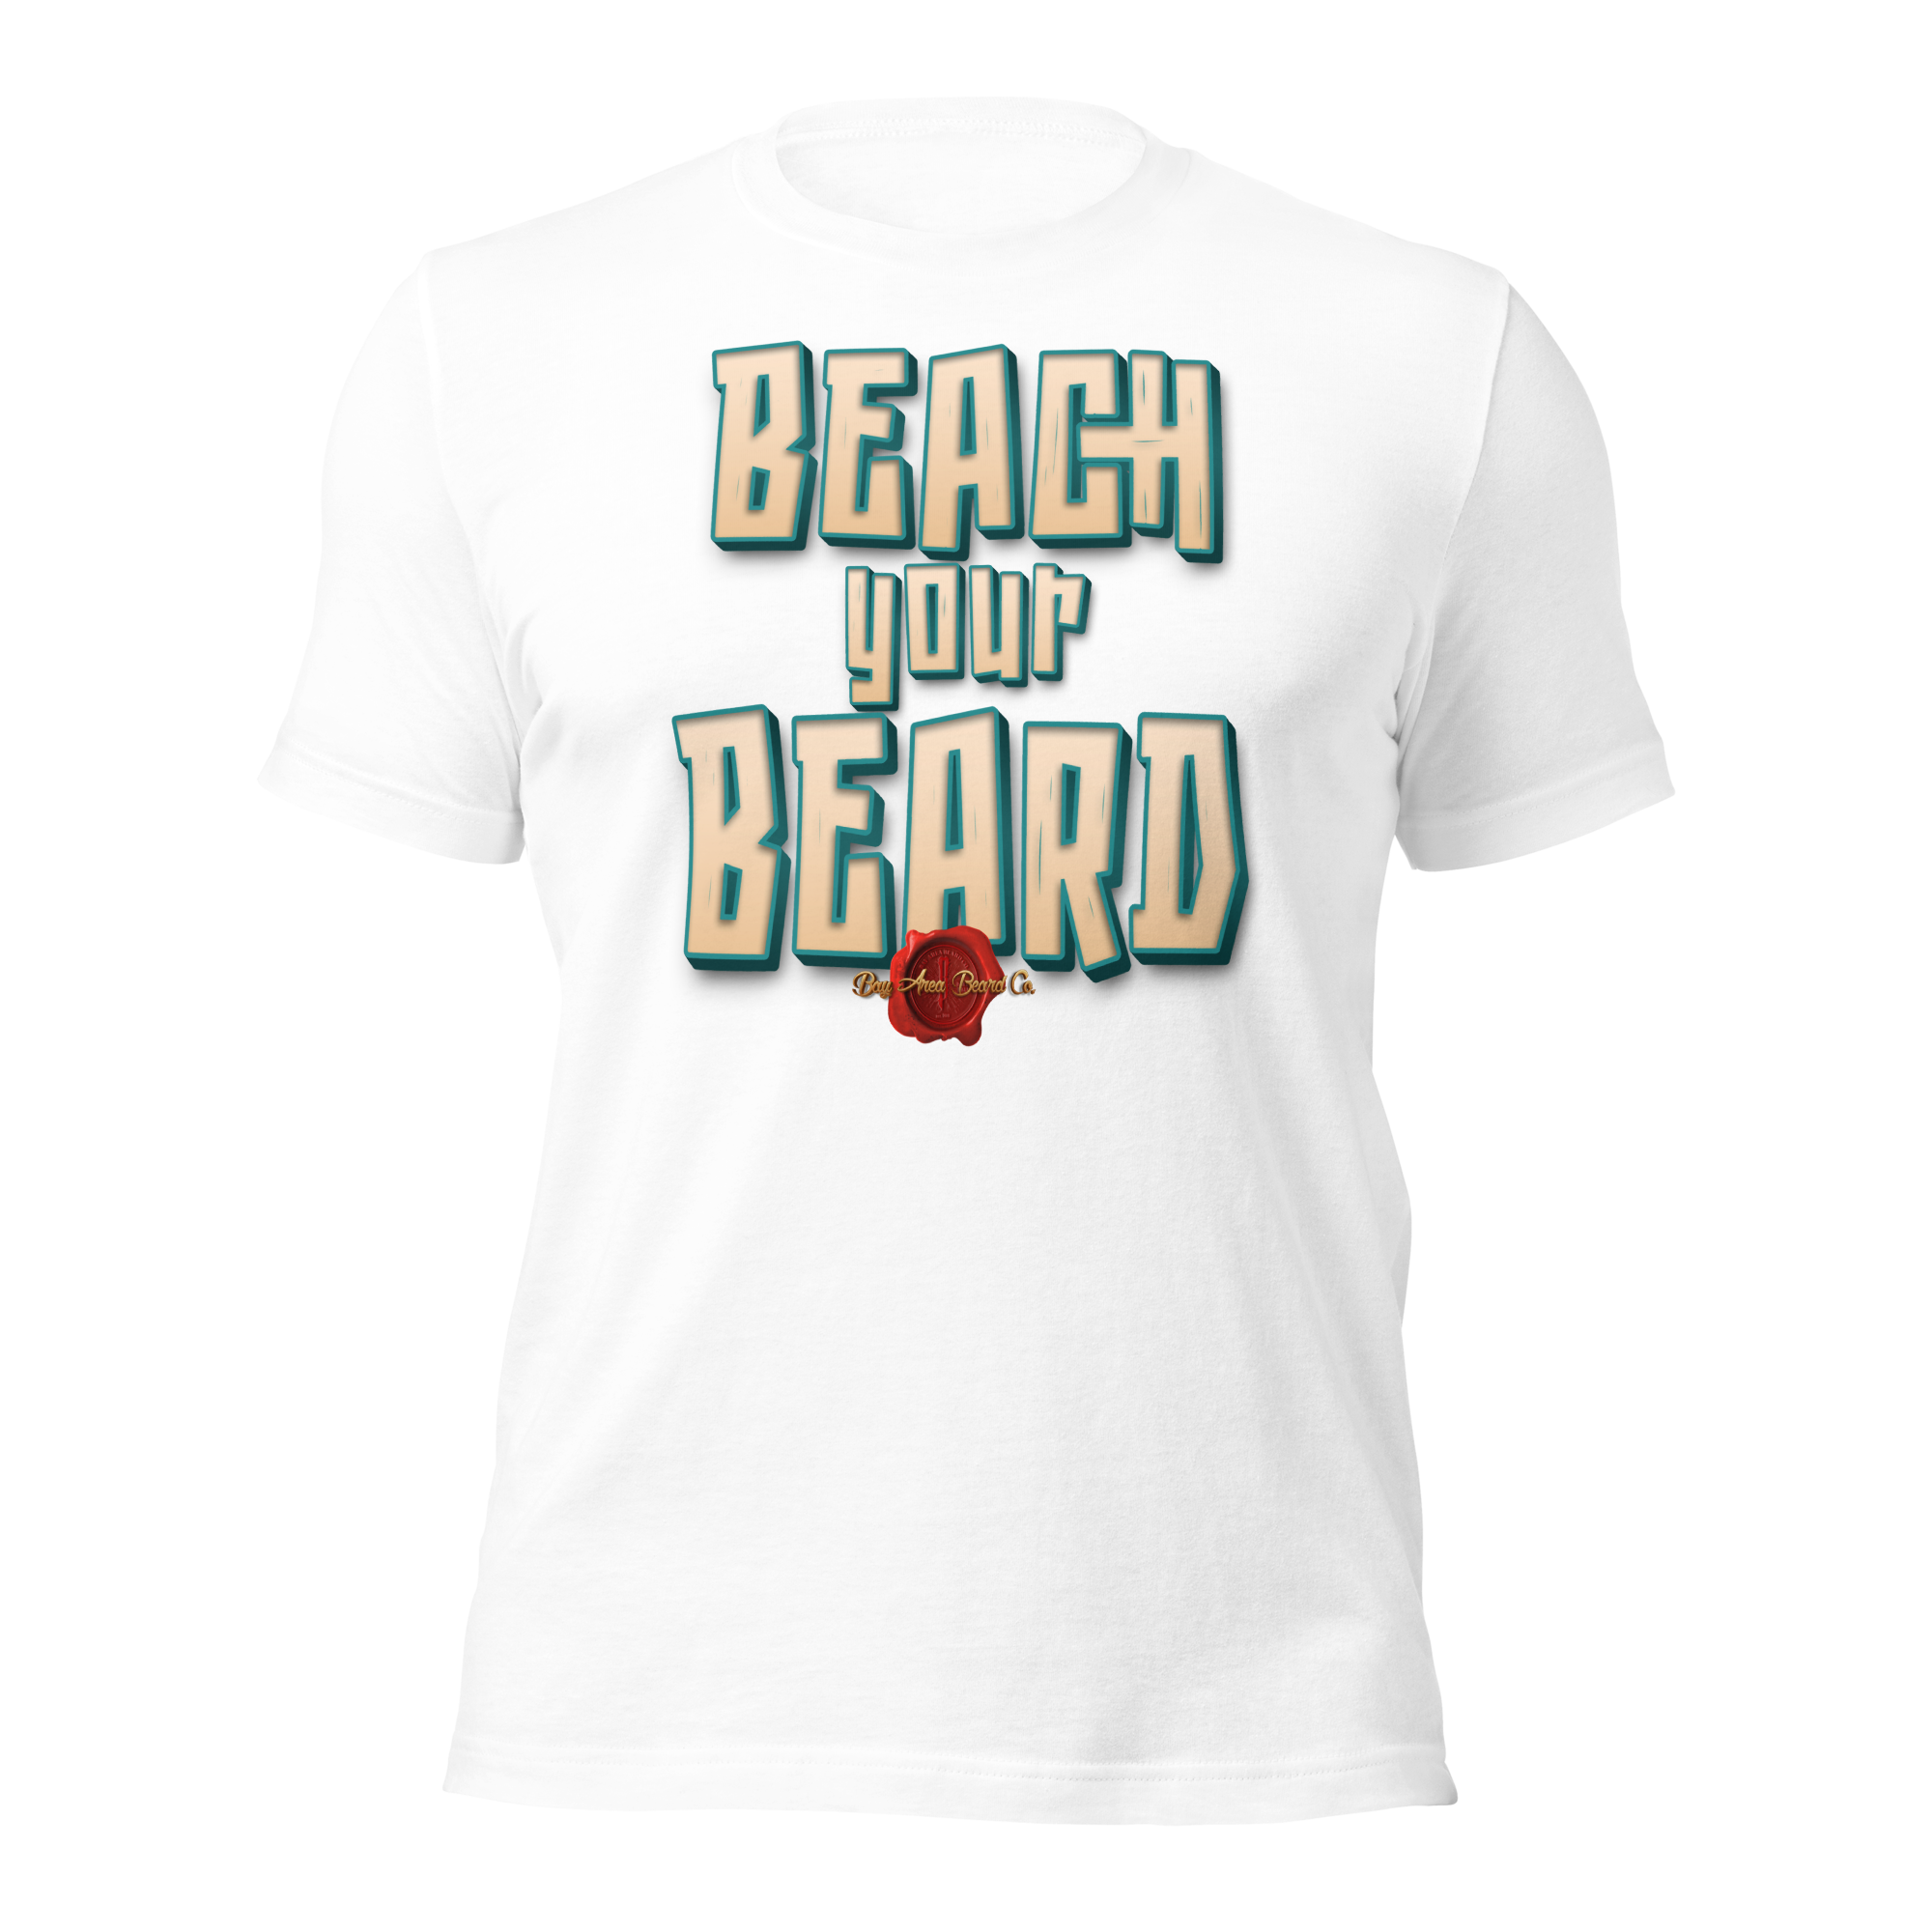 Beach Your Beard Unisex t-shirt